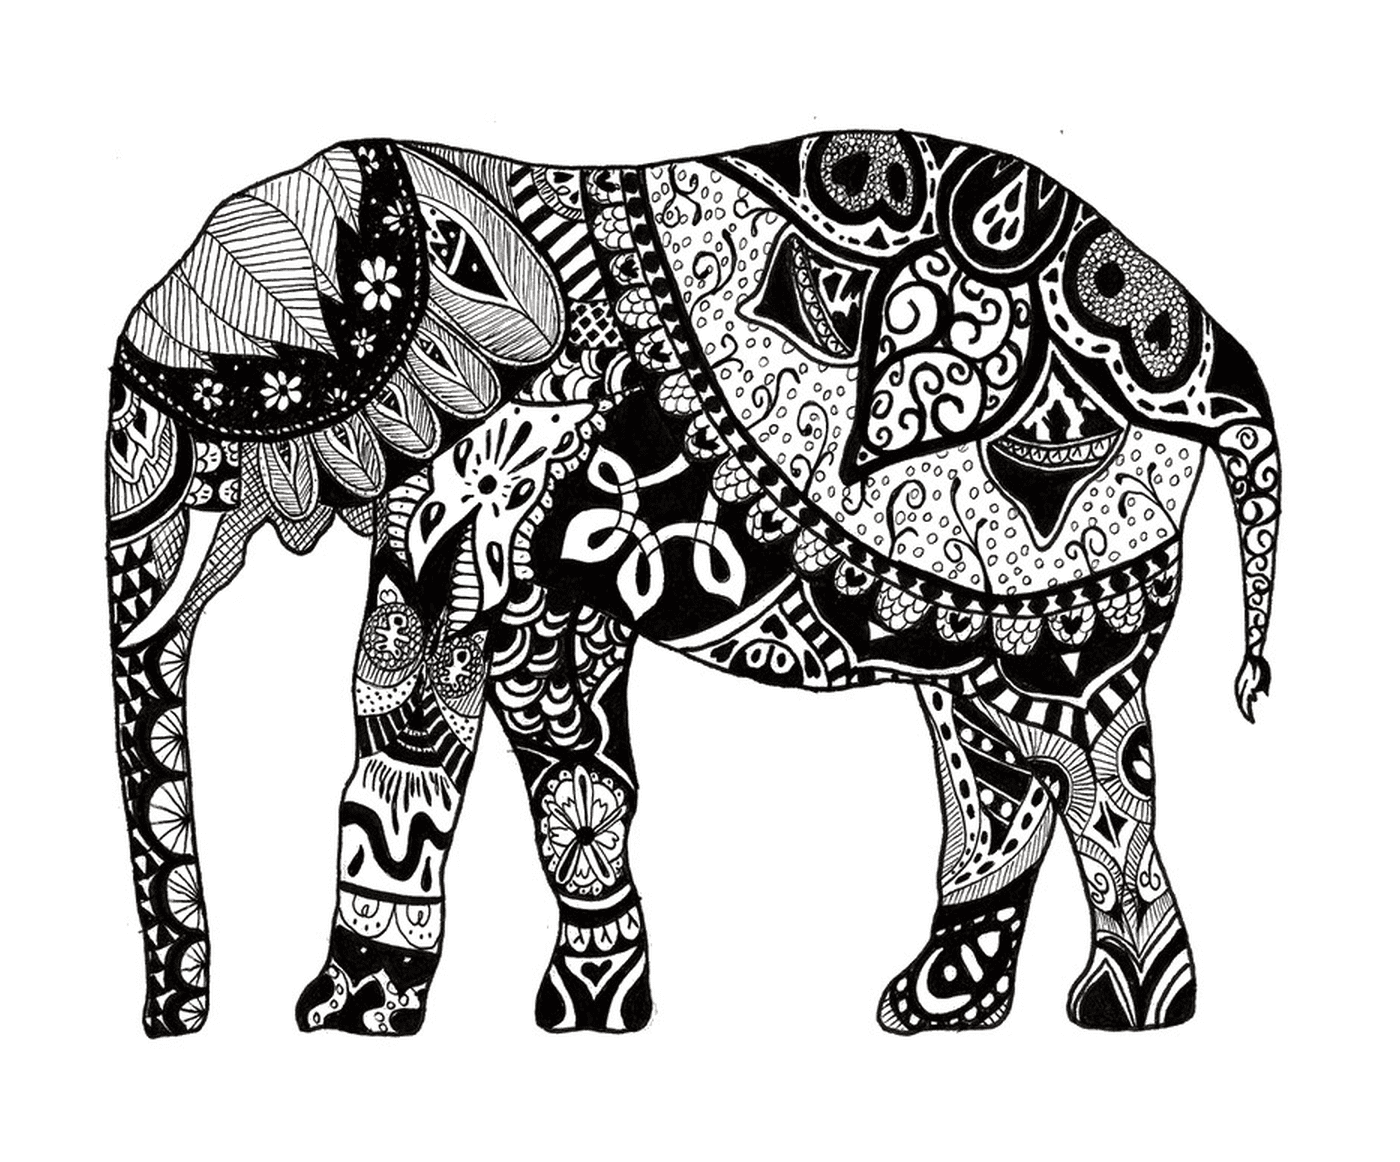  Un elefante con muchos mandalas en su cuerpo 